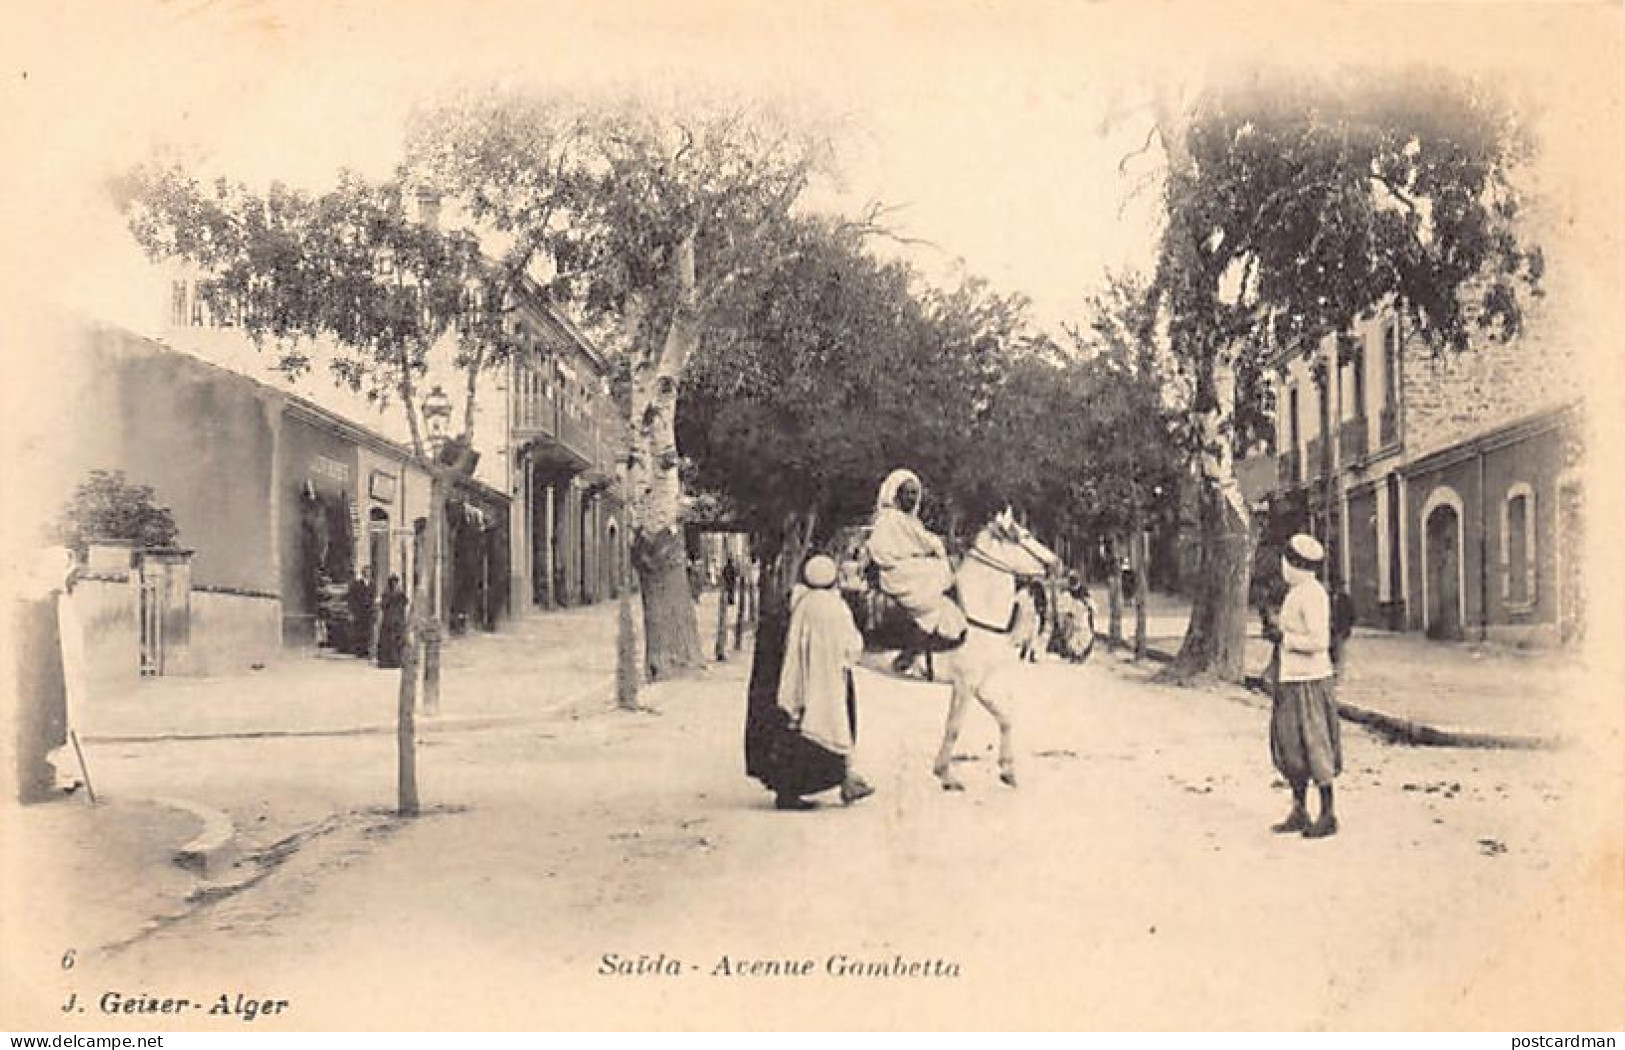 SAIDA - Avenue Nue Gambetta - Saida